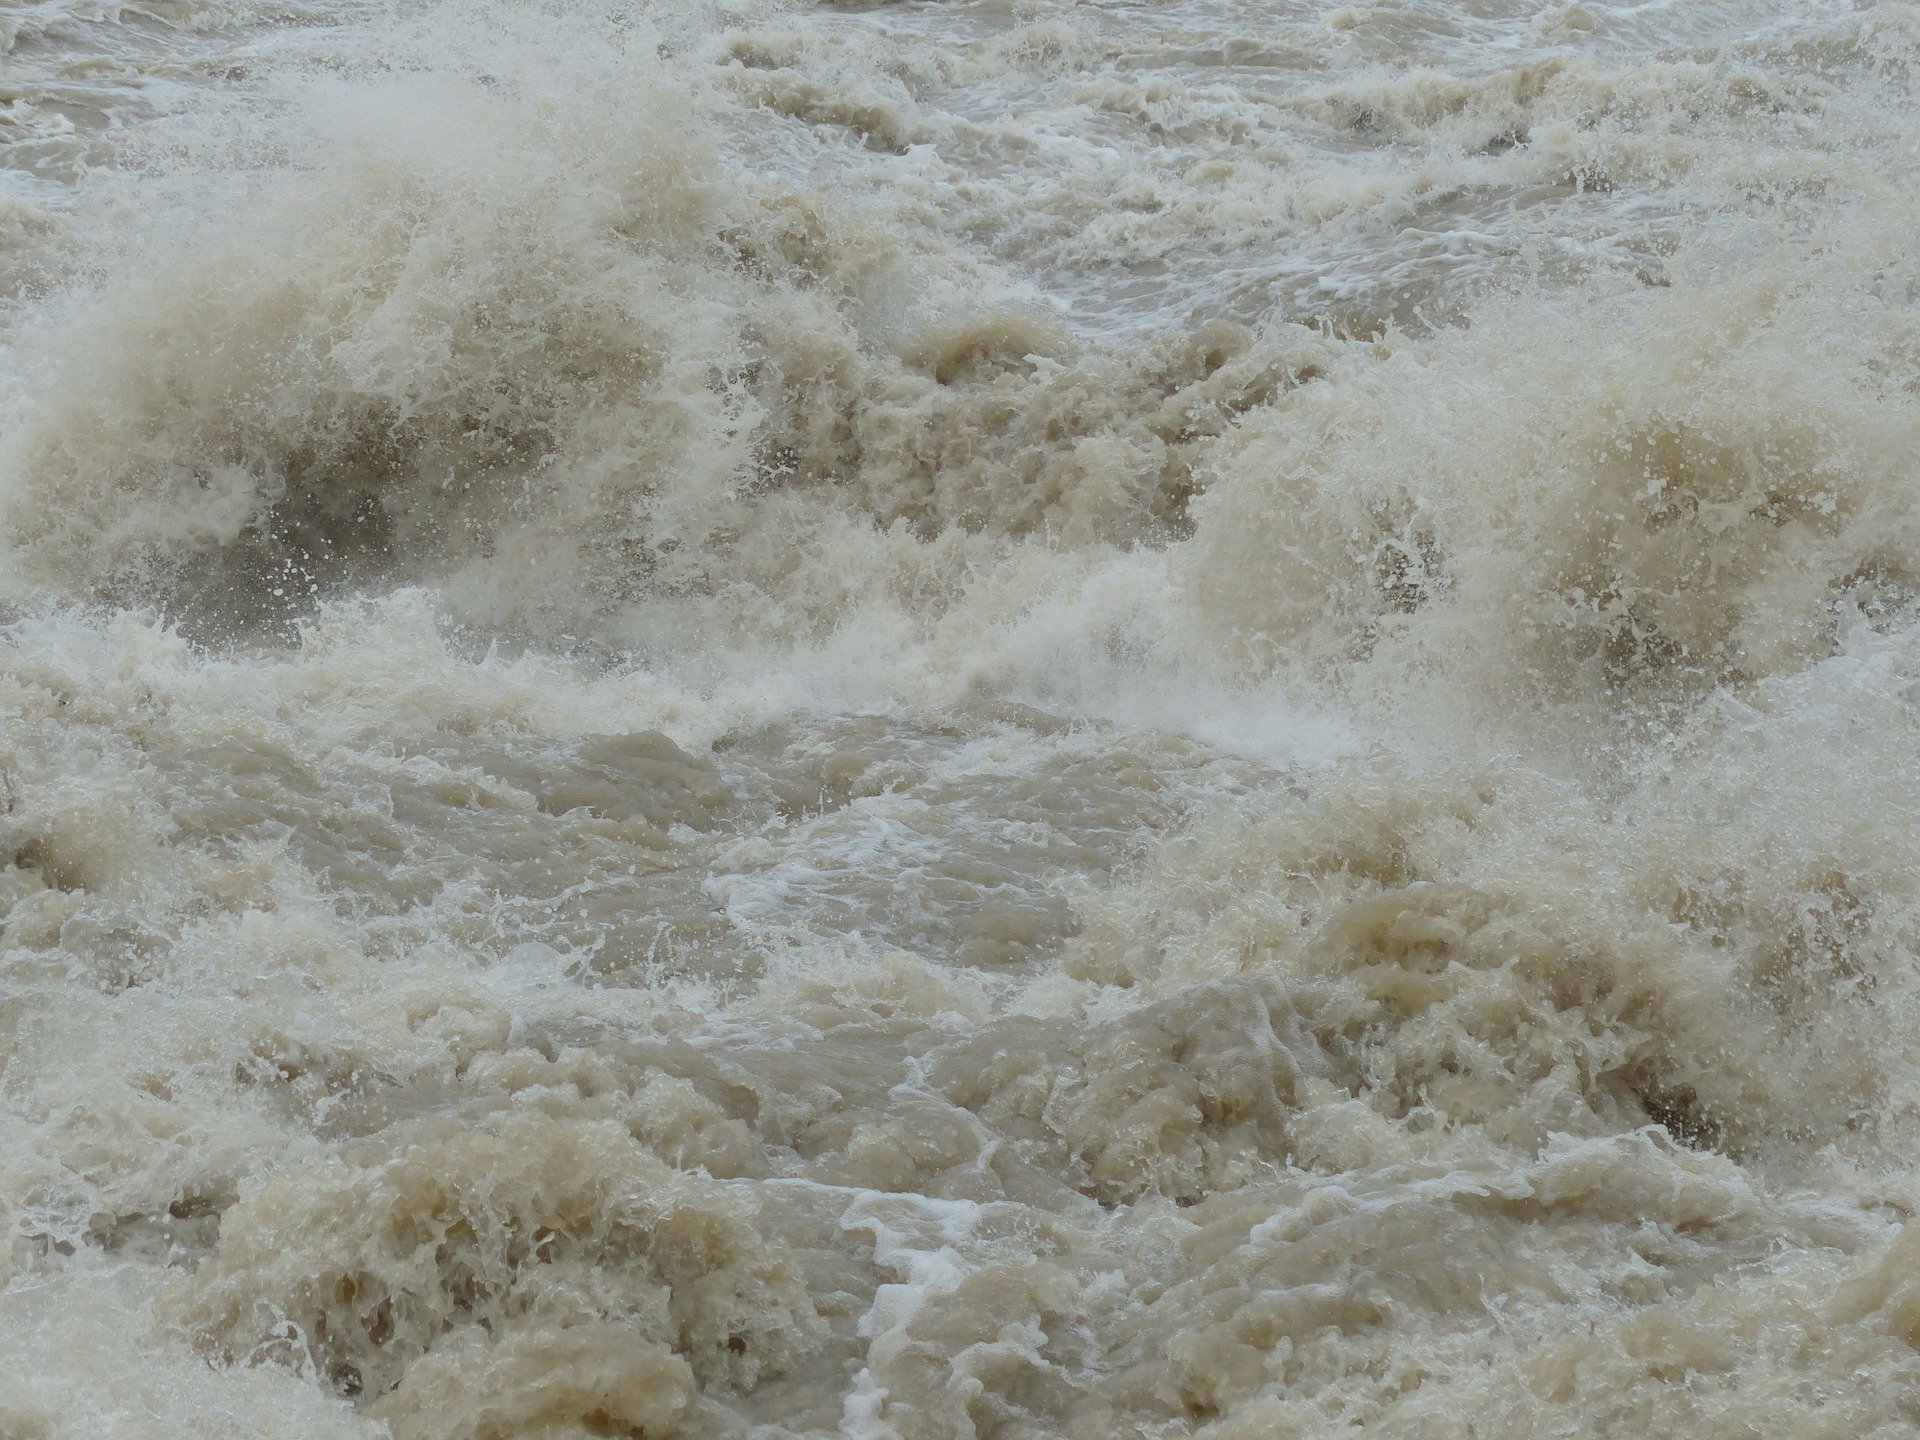 Hochwasser_Foto_Pixabay